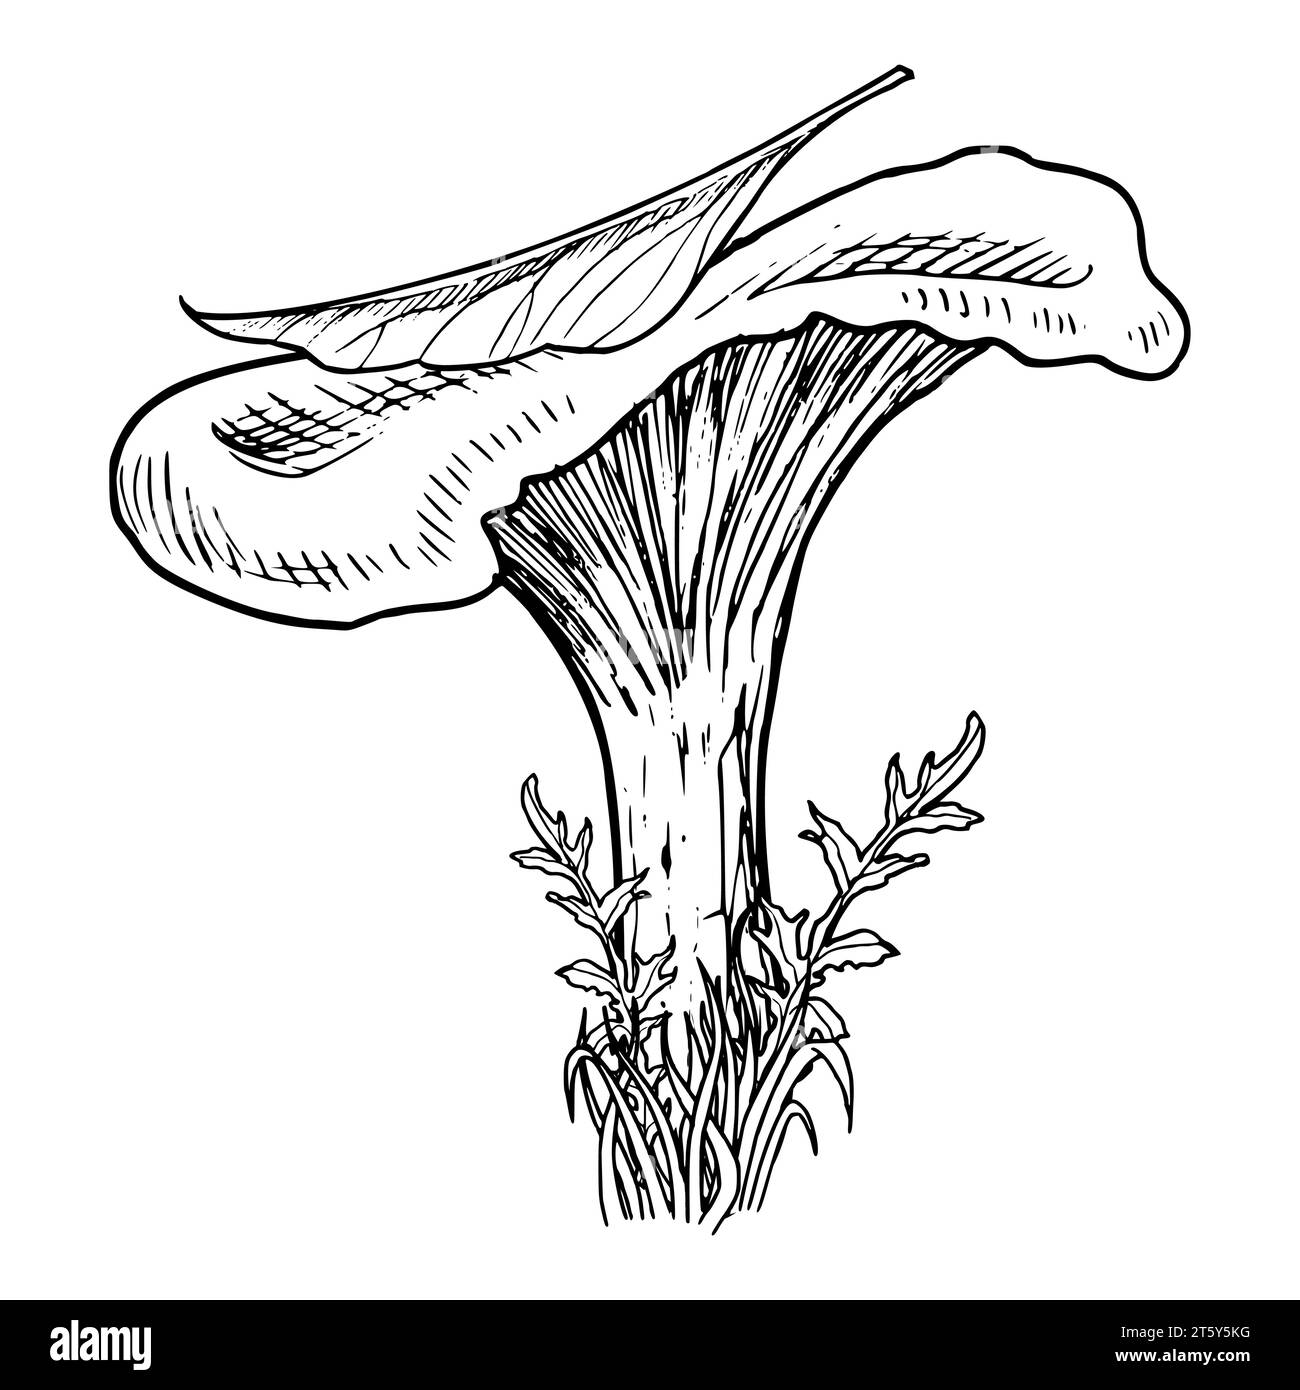 Waldpilz mit Blatt. Vektor Hand gezeichnete Illustration von Chanterelle in einem Wald gemalt von schwarzen Tinten in linearem Stil. Einfarbige Retro-Zeichnung von Pilzen als Symbol oder Logo. Herbstätzung. Stock Vektor